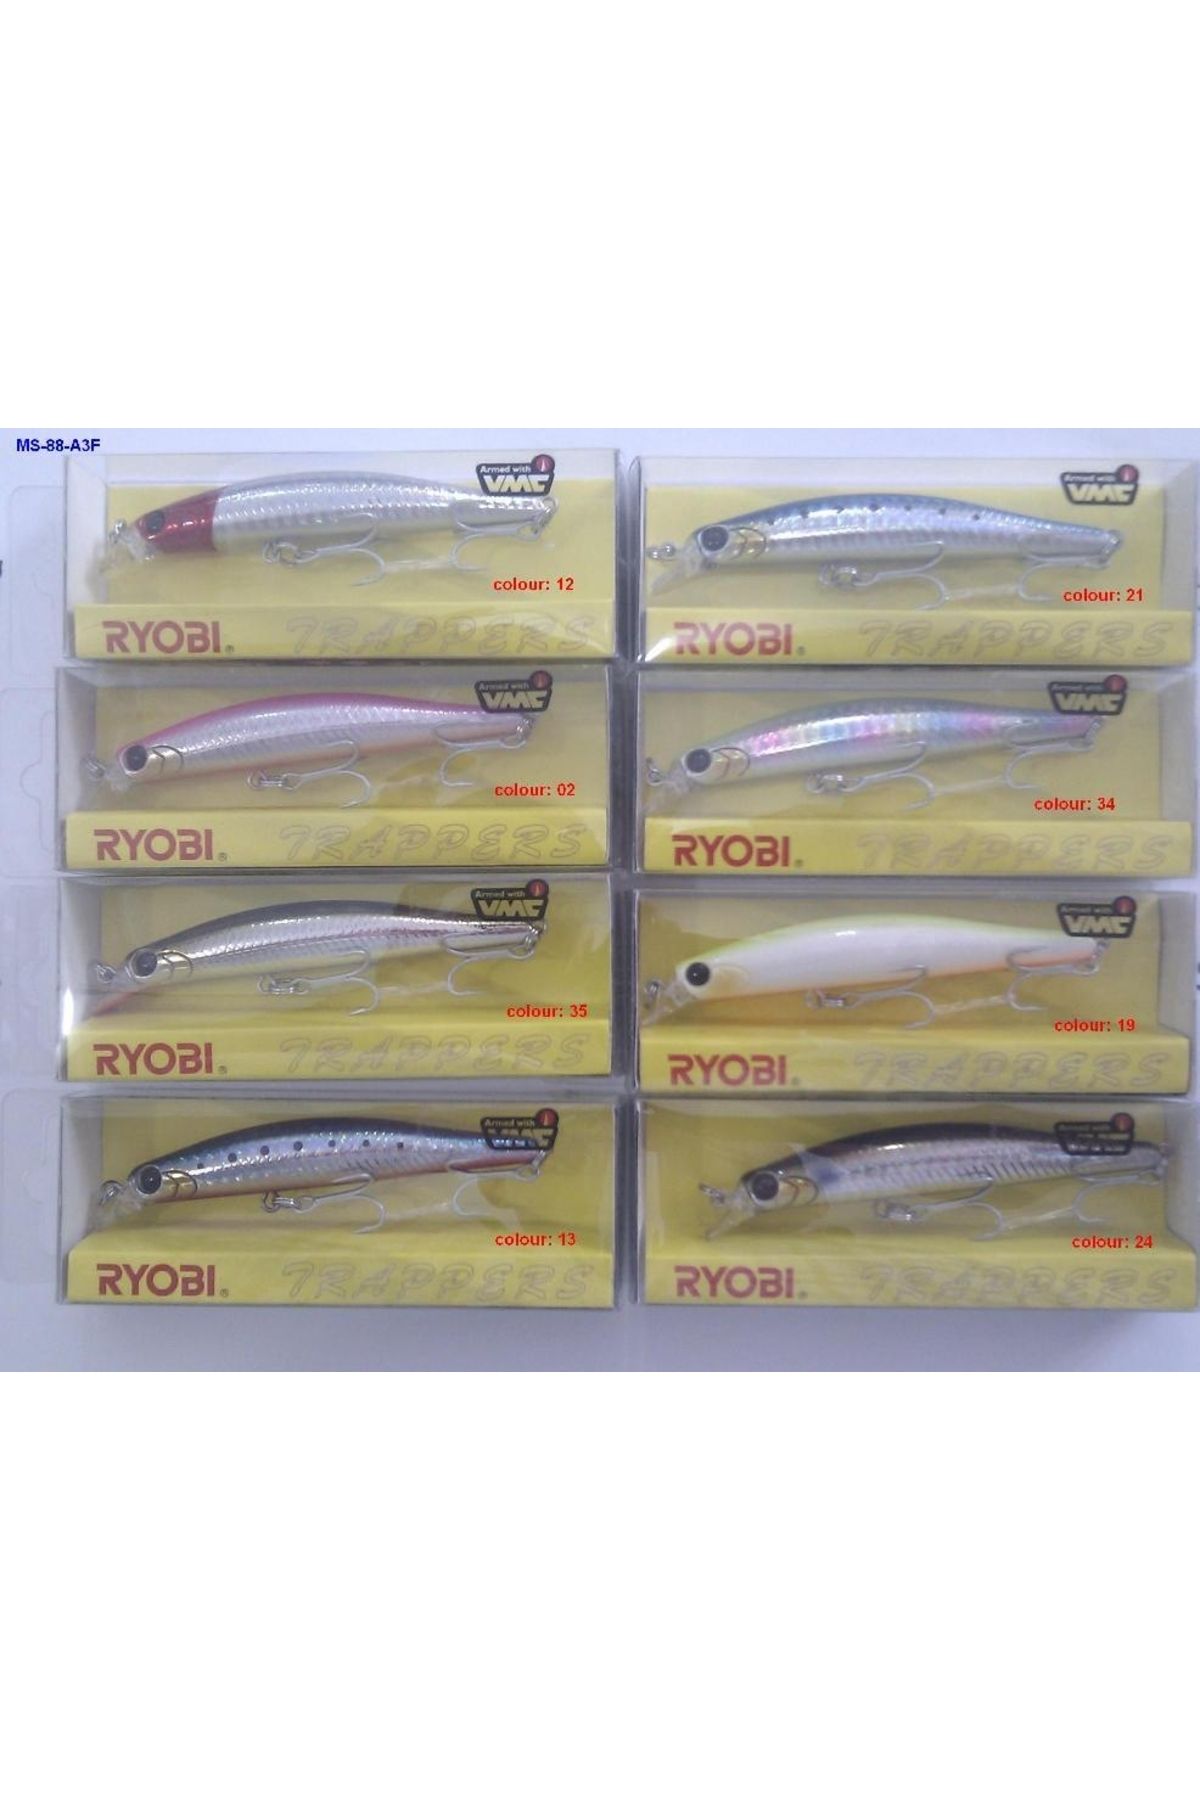 Ryobi Trapper Maket Balık Ms-88-a3f 8.8cm 10gr 0,6m Renk:02